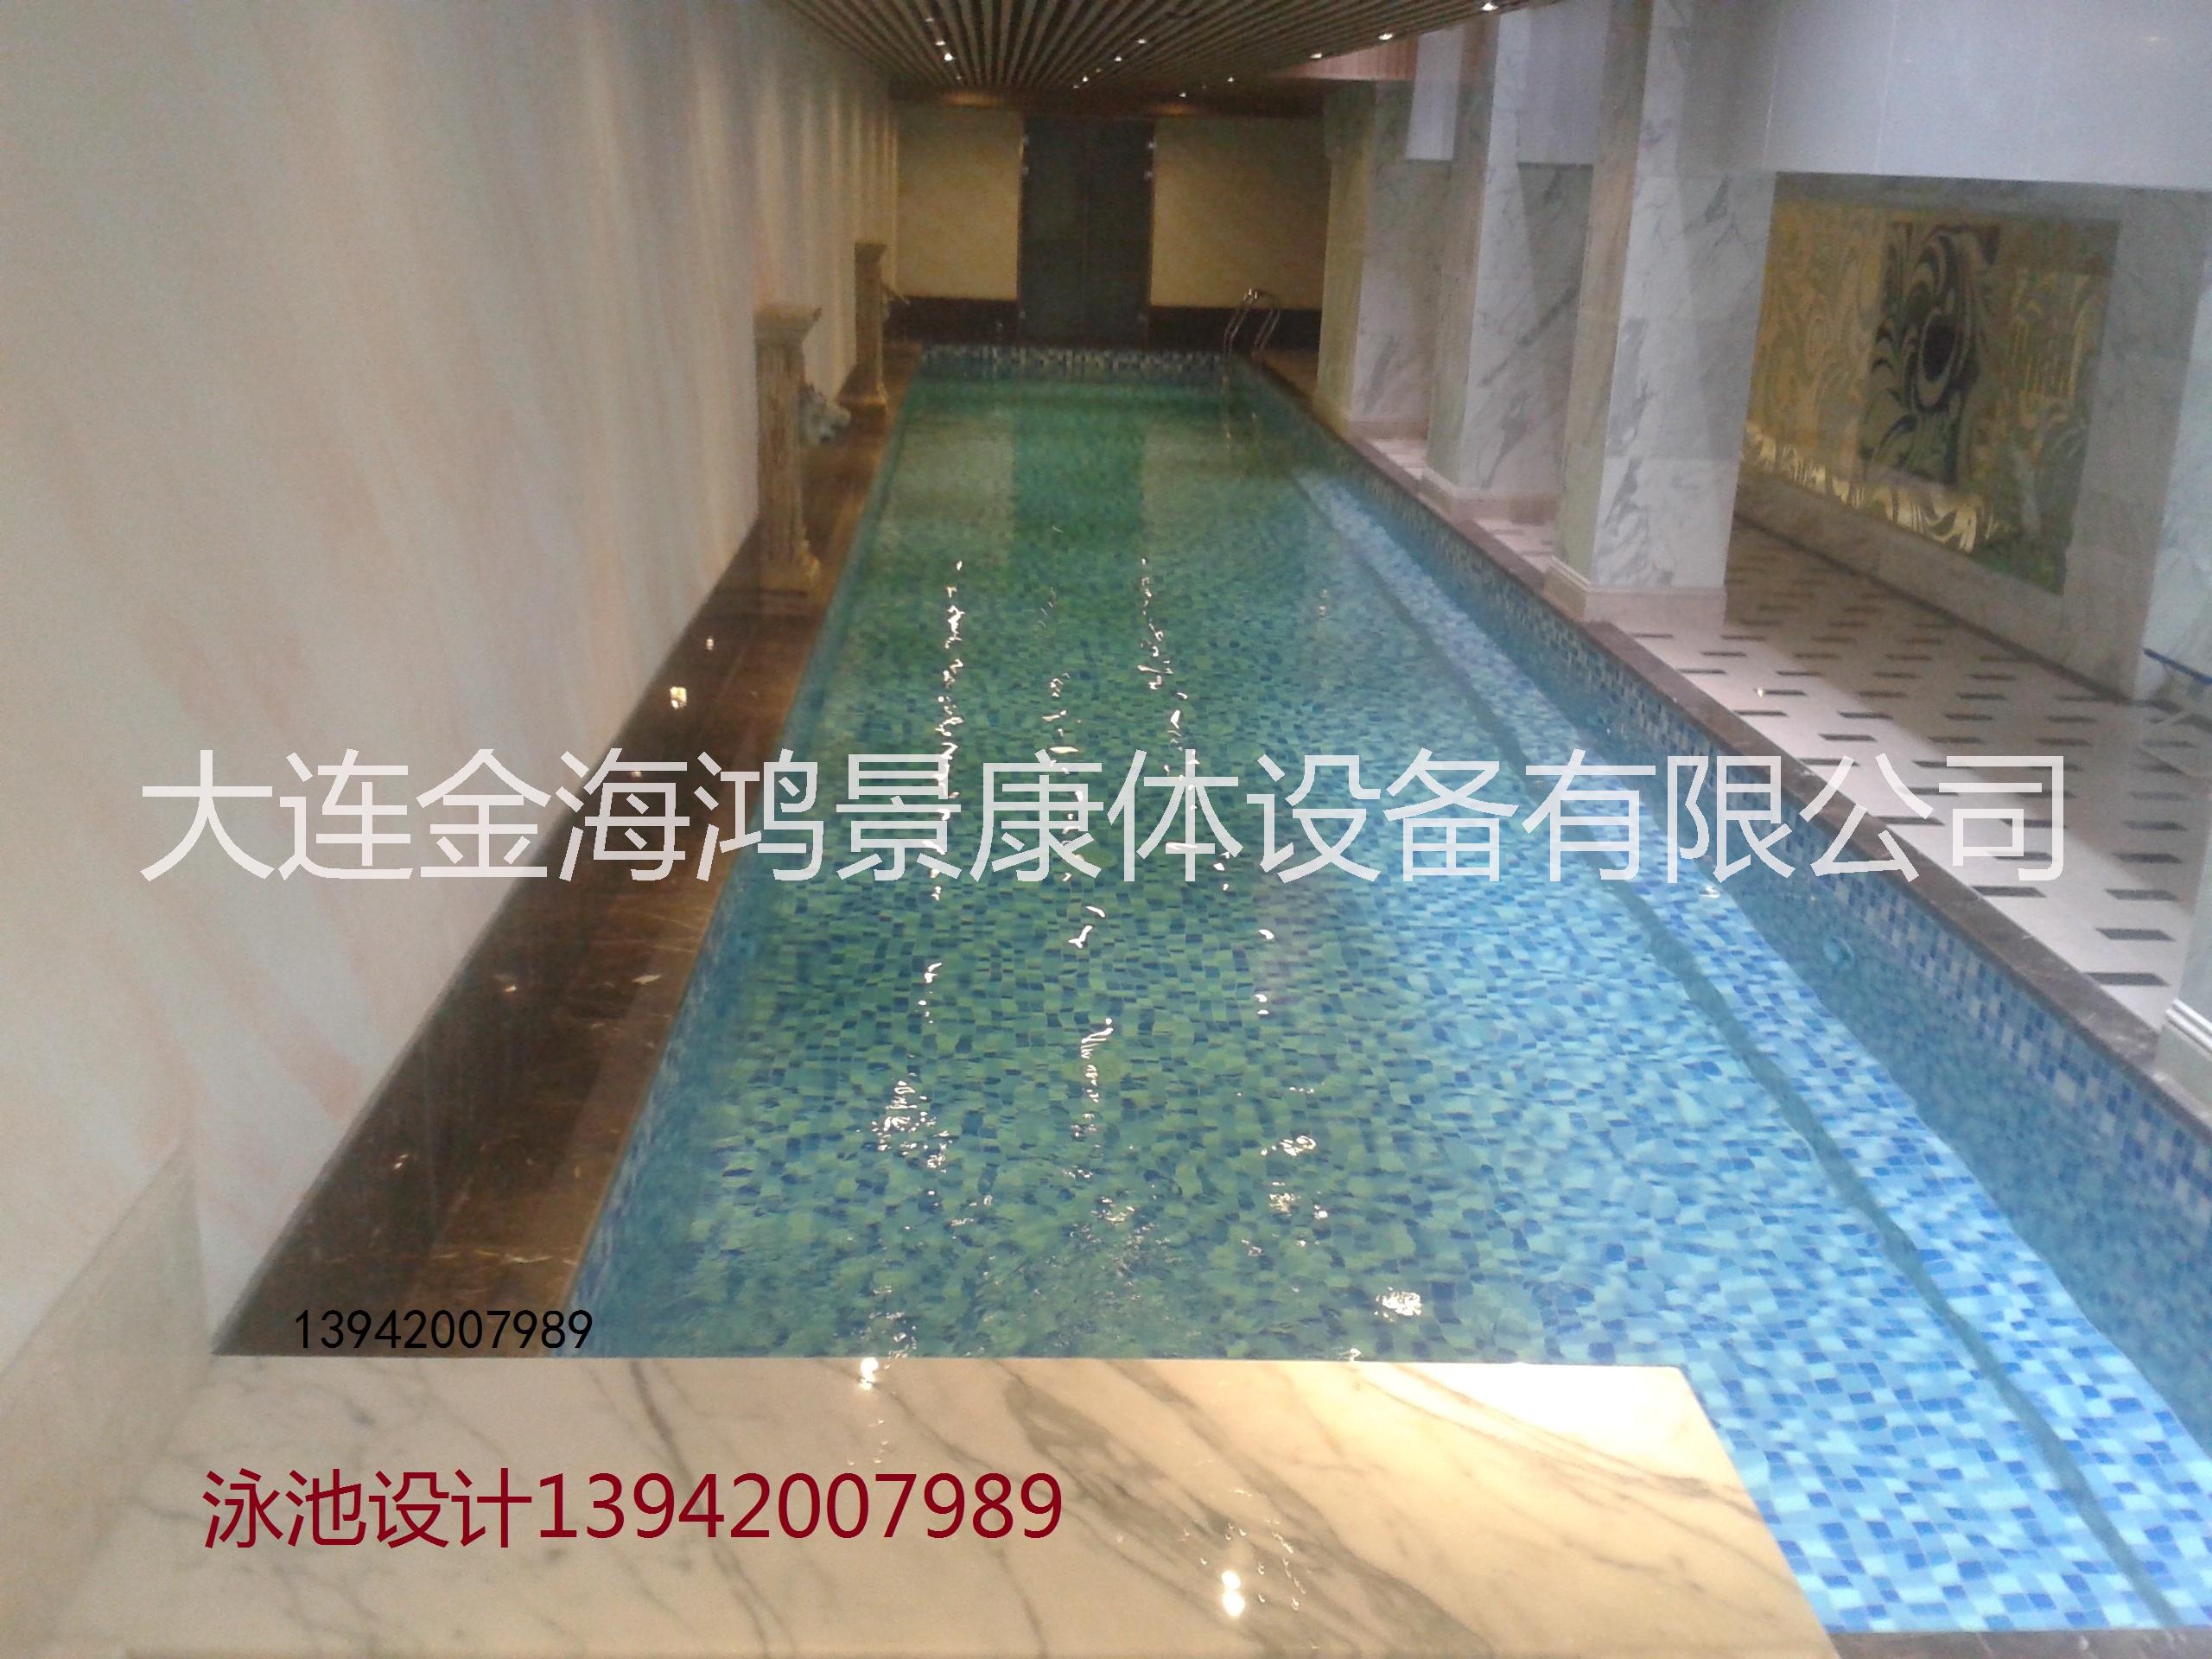 大连酒店泳池设备维修13942007989